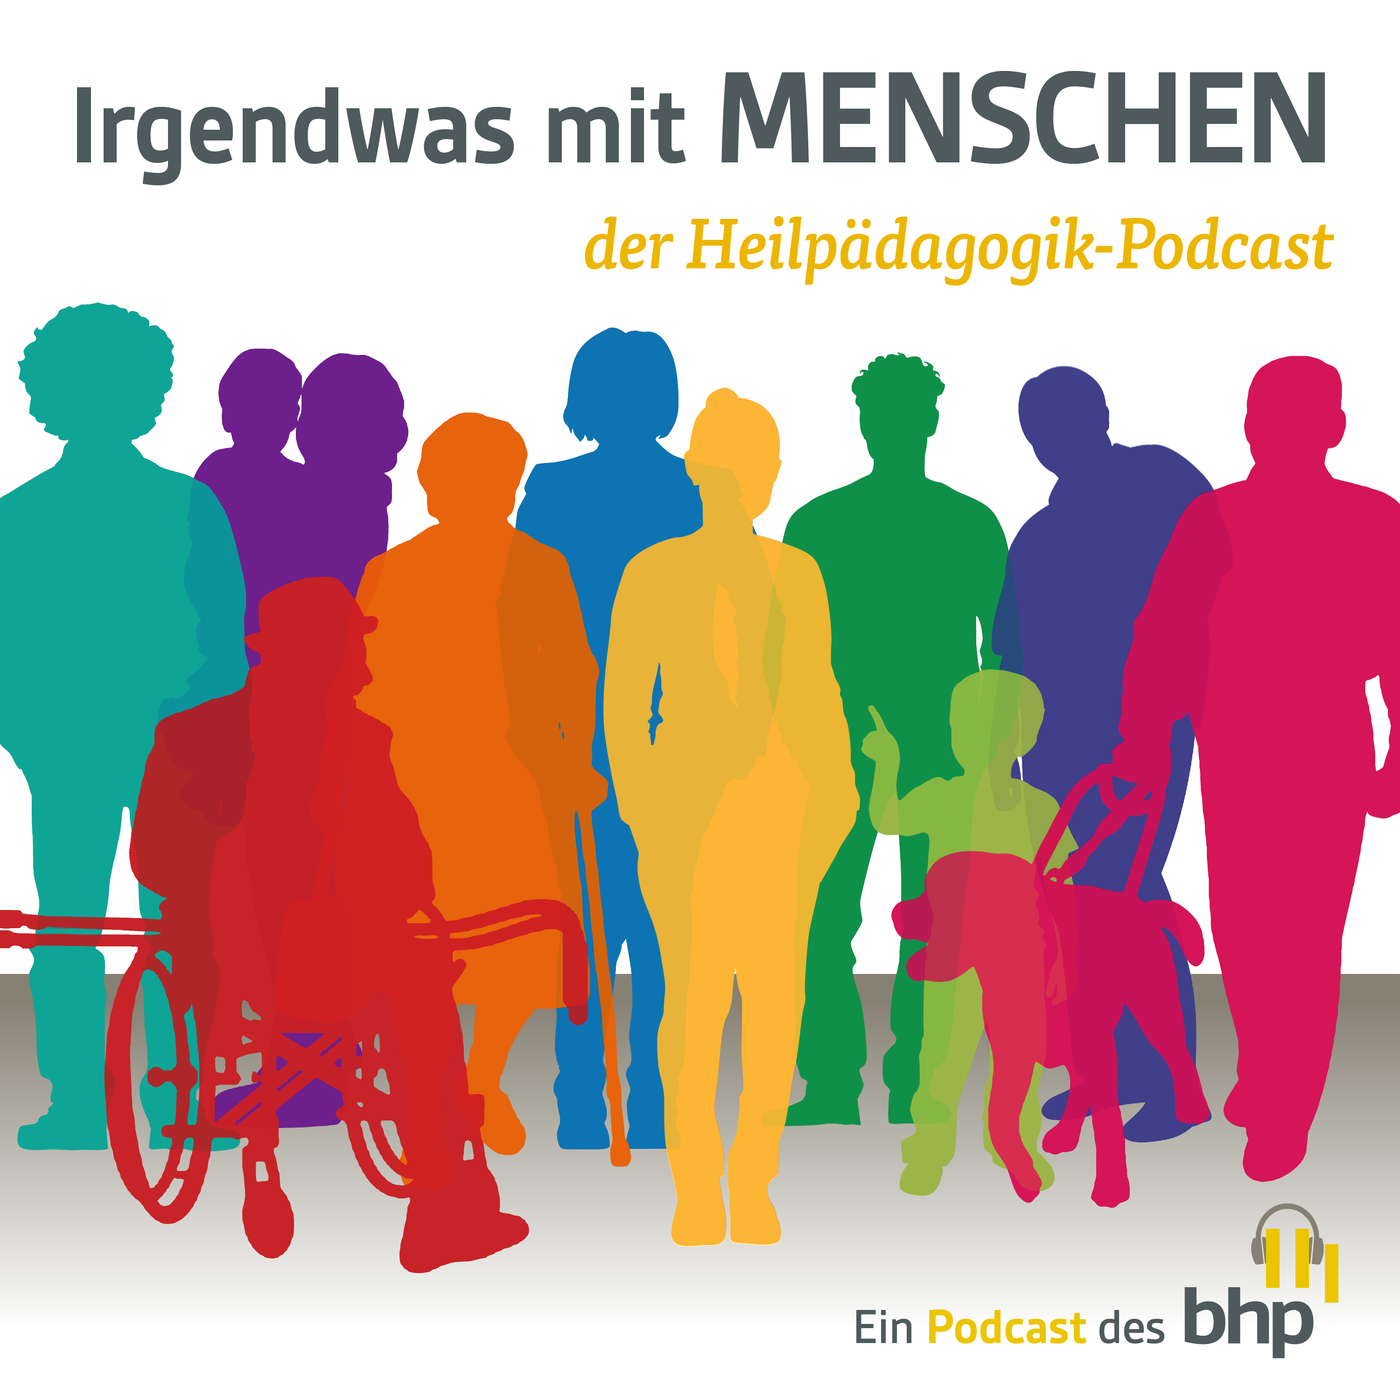 Der Heilpädagogik-Podcast stellt sich vor